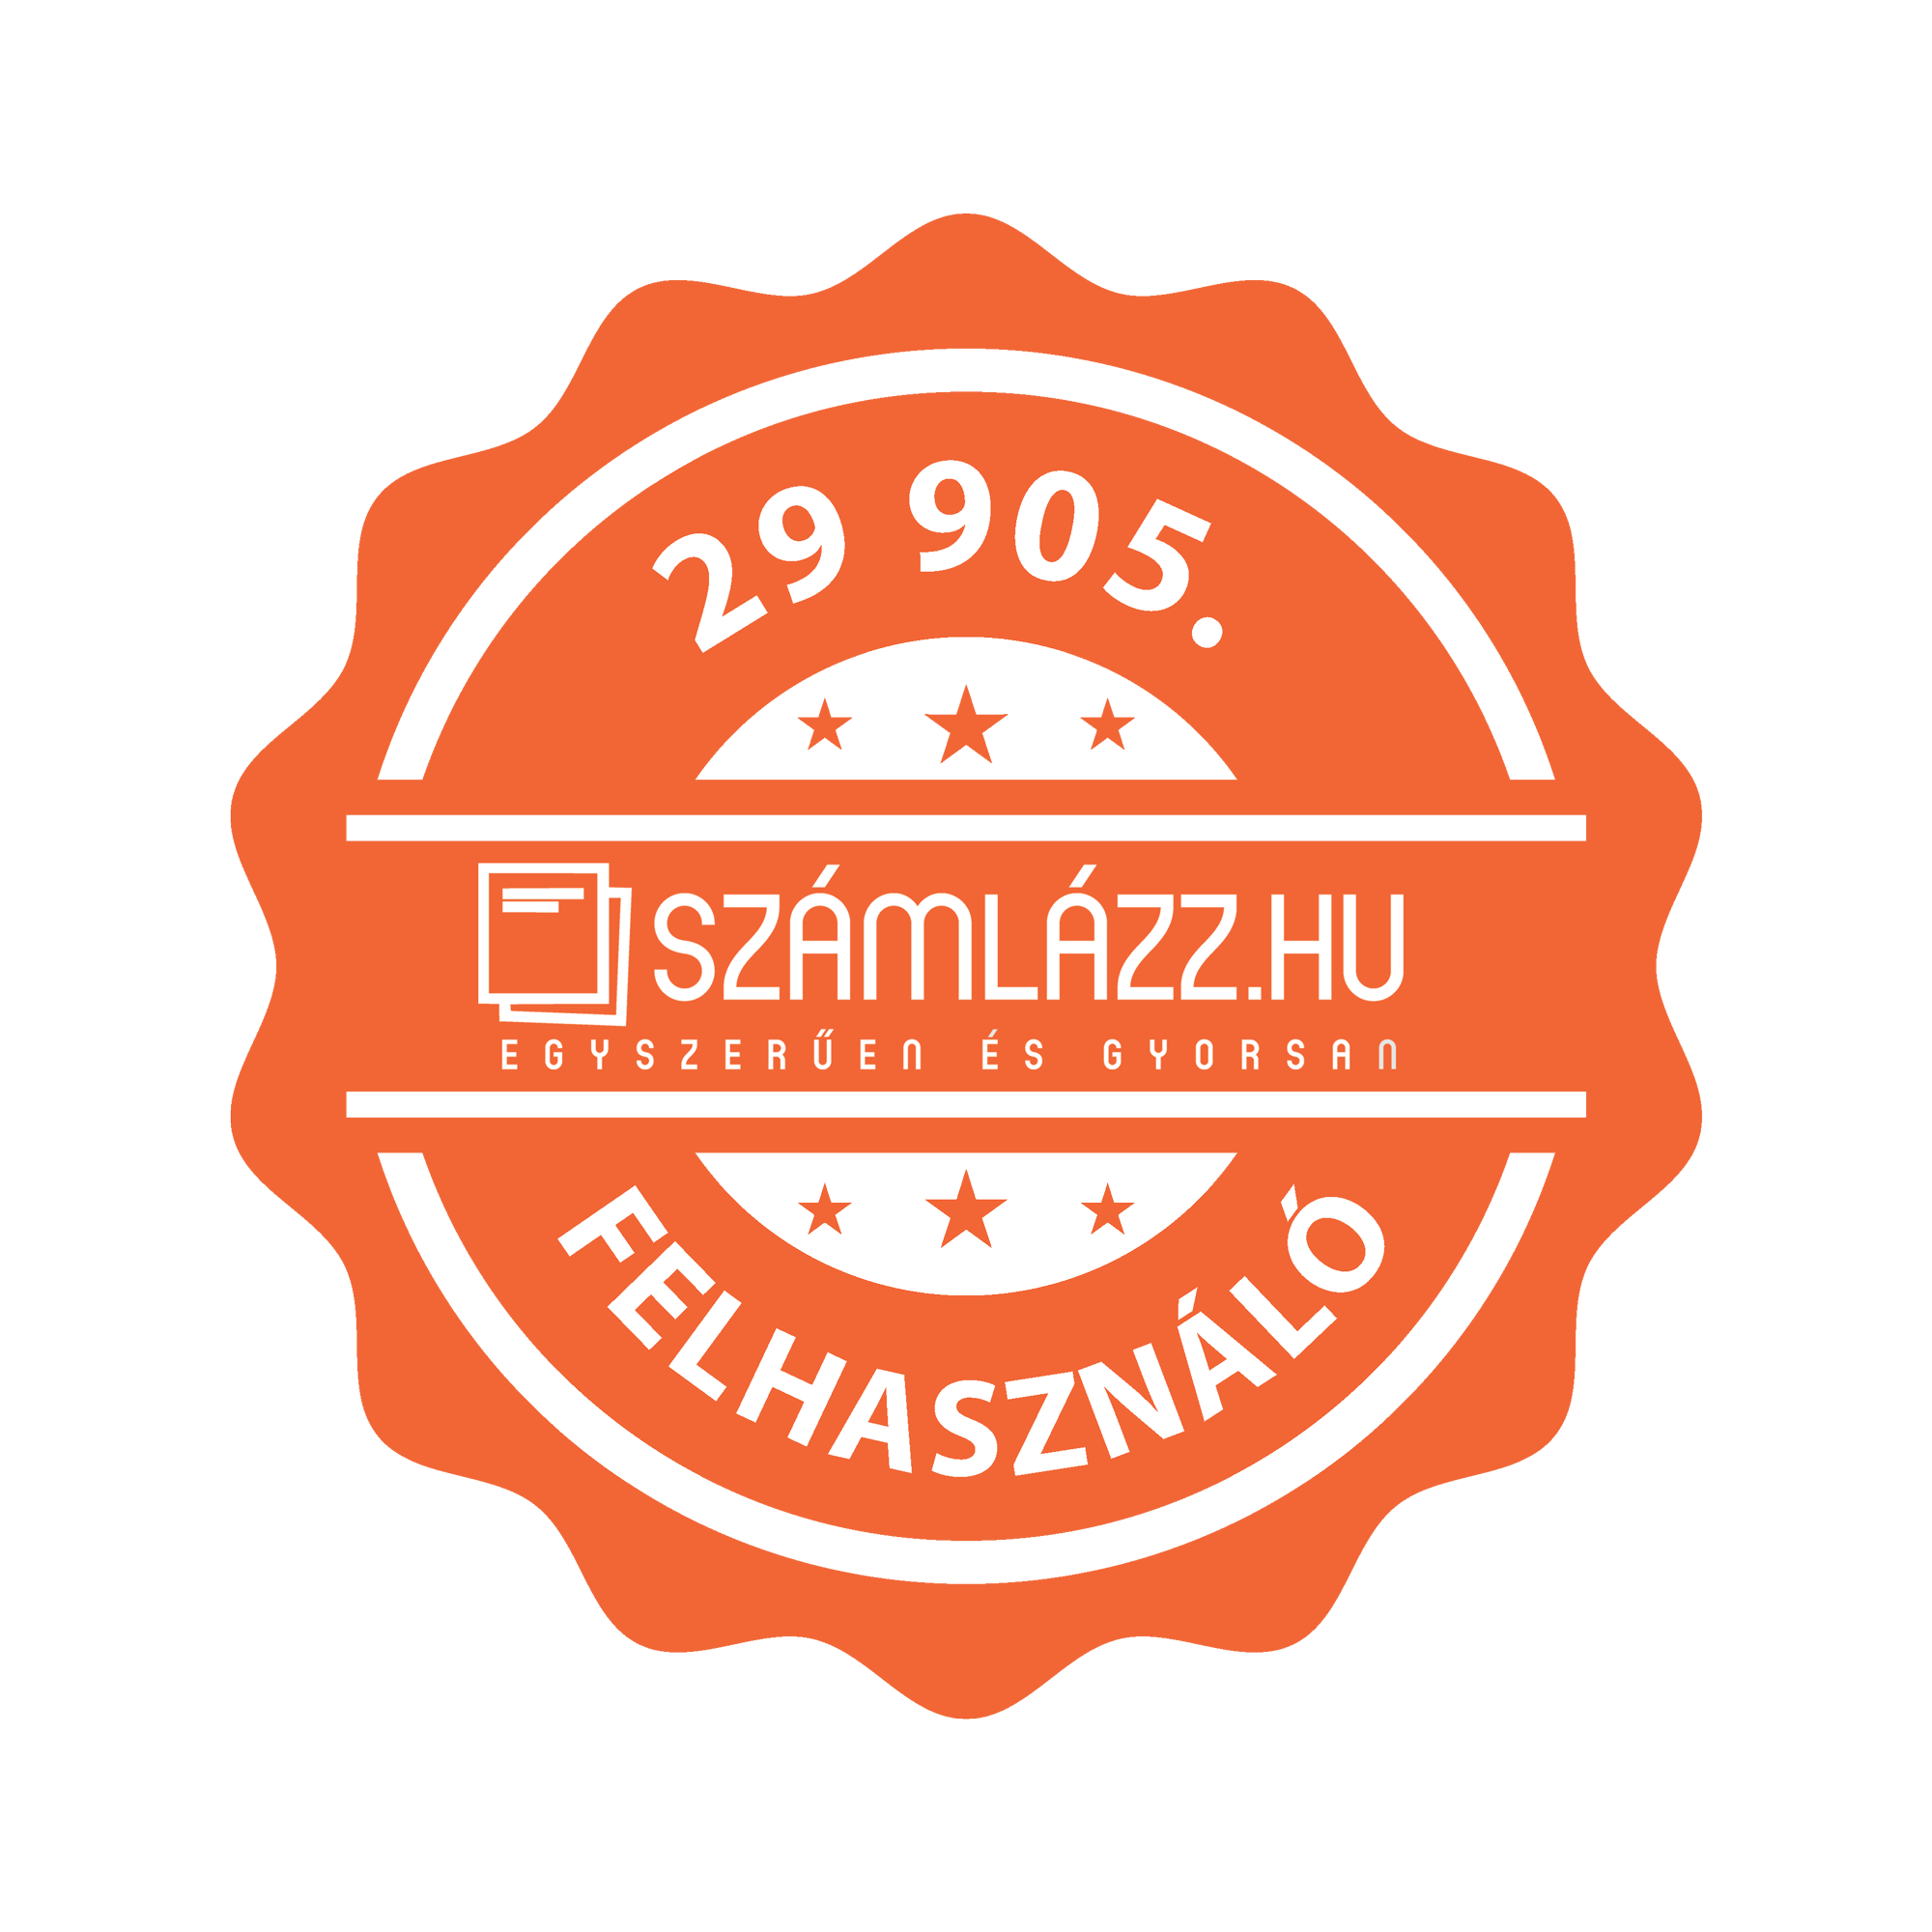 Aranyi Csaba badge